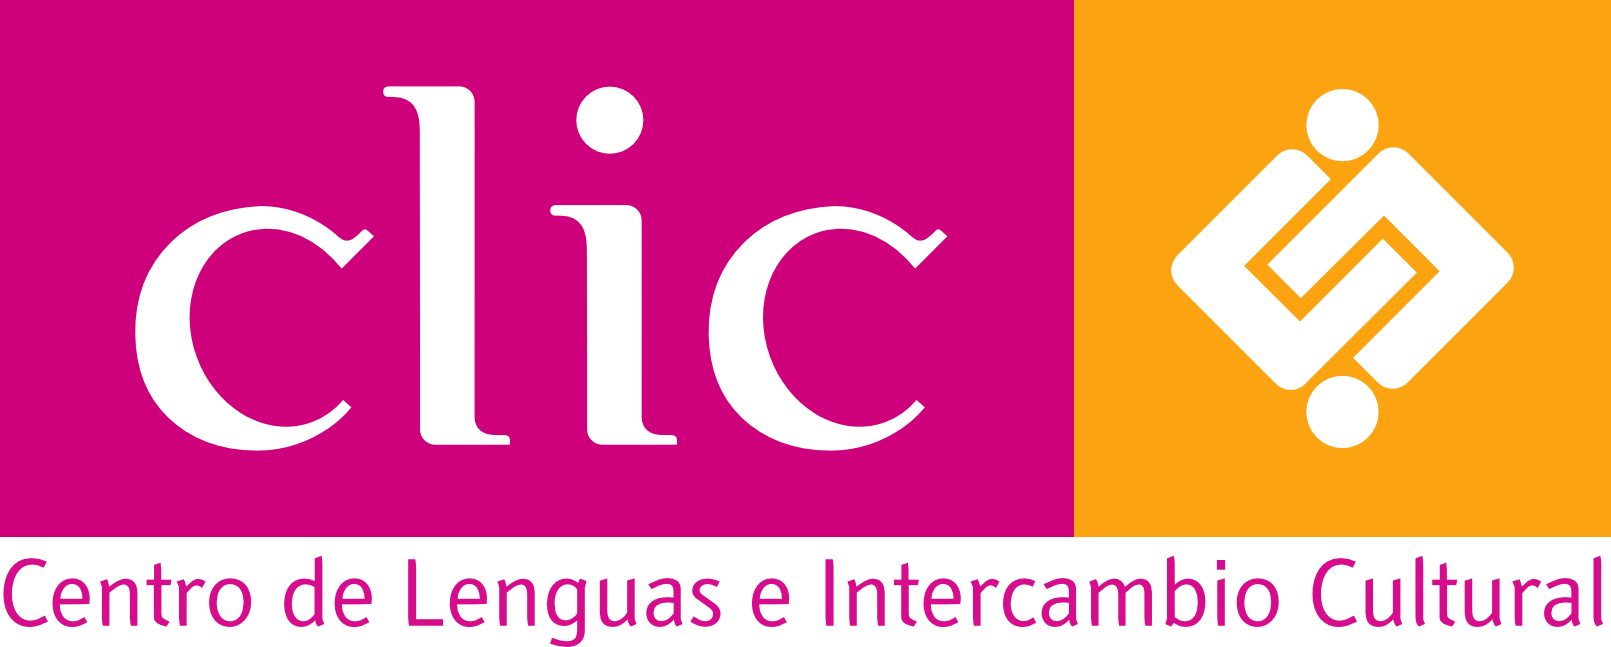 Centro de Lenguas e Intercambio Cultural